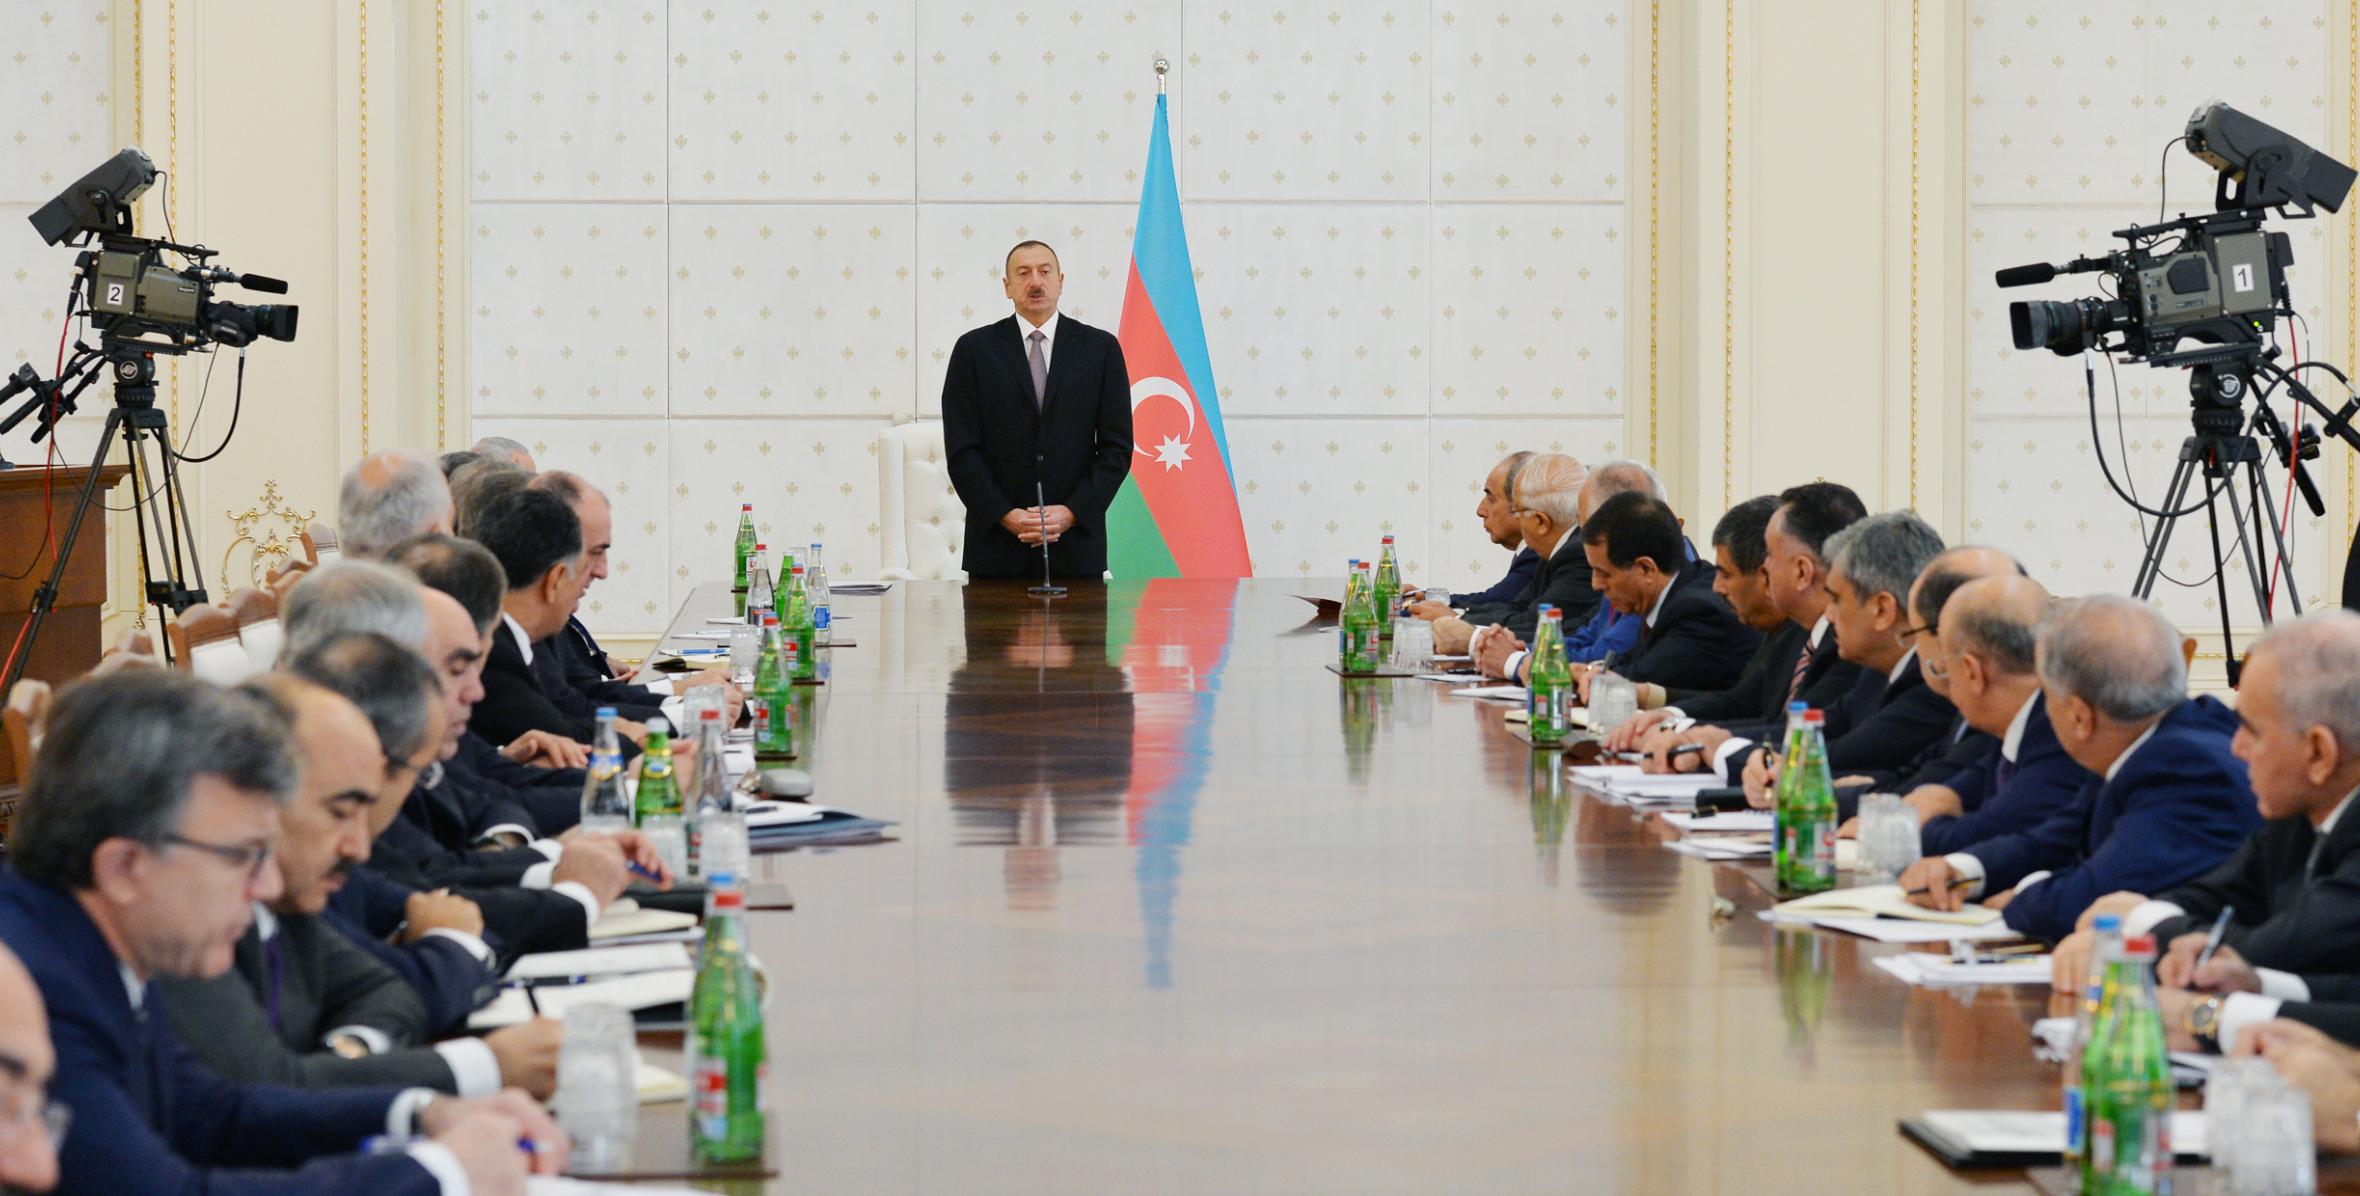 Под председательством Ильхама Алиева состоялось заседание Кабинета Министров, посвященное итогам социально-экономического развития за девять месяцев 2015 года и предстоящим задачам